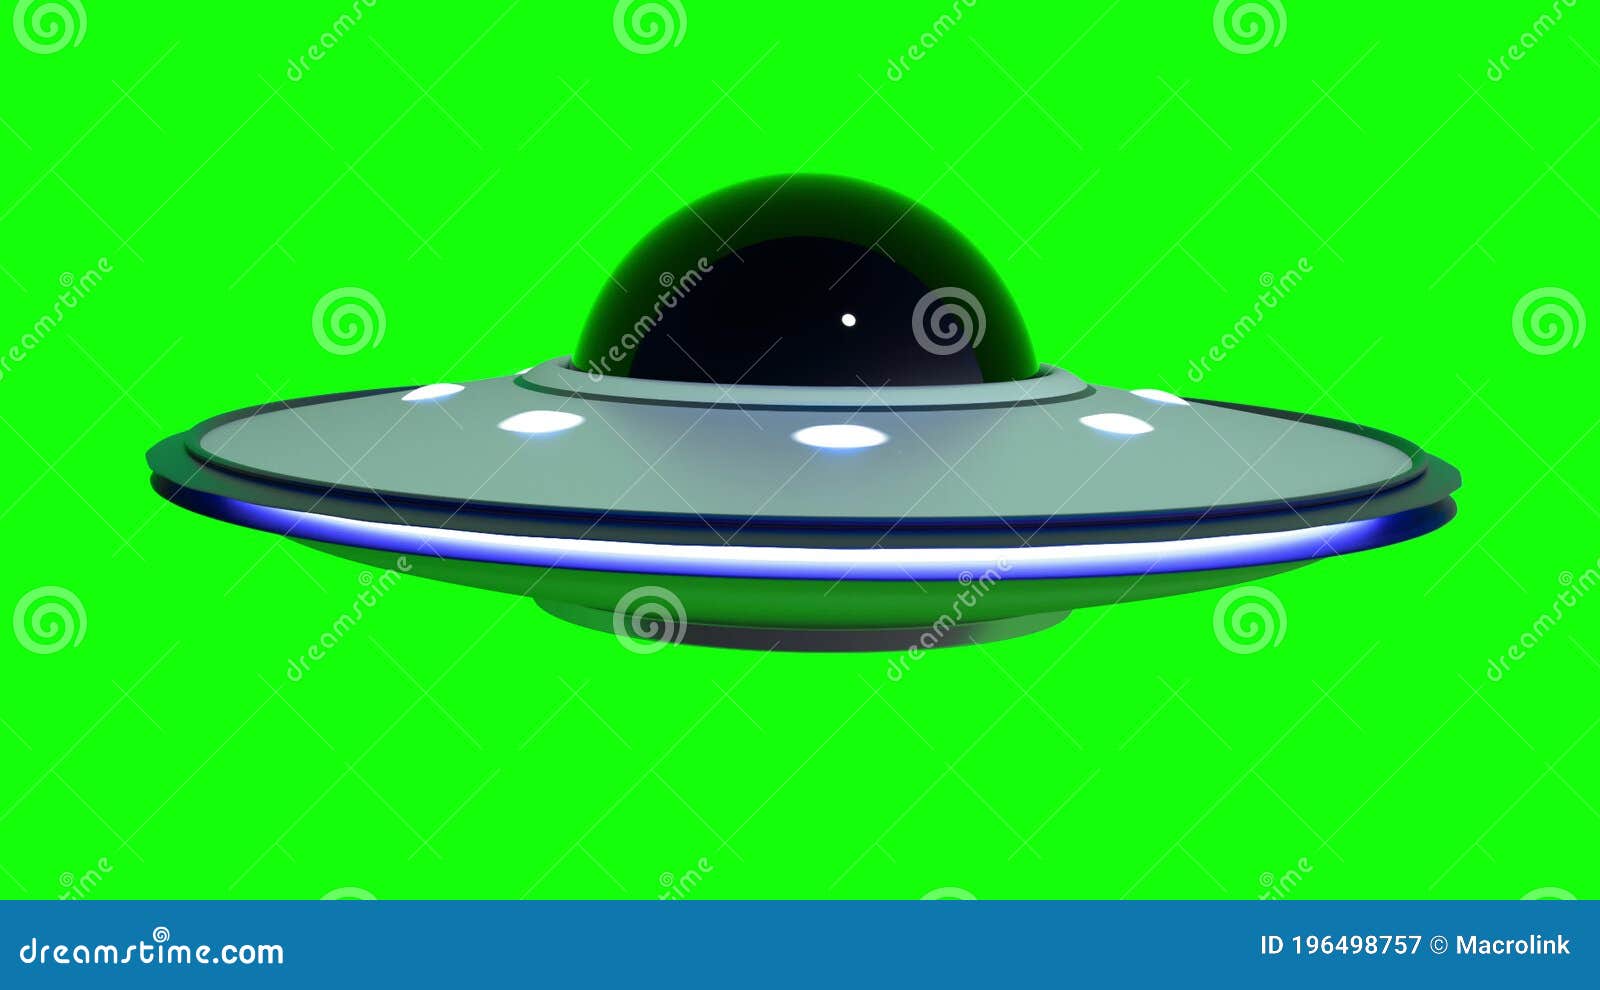 Desenho digital conjunto de fotos alienígena ufo homem verde estrela caindo  arco-íris disco voador espaço alienígena dia